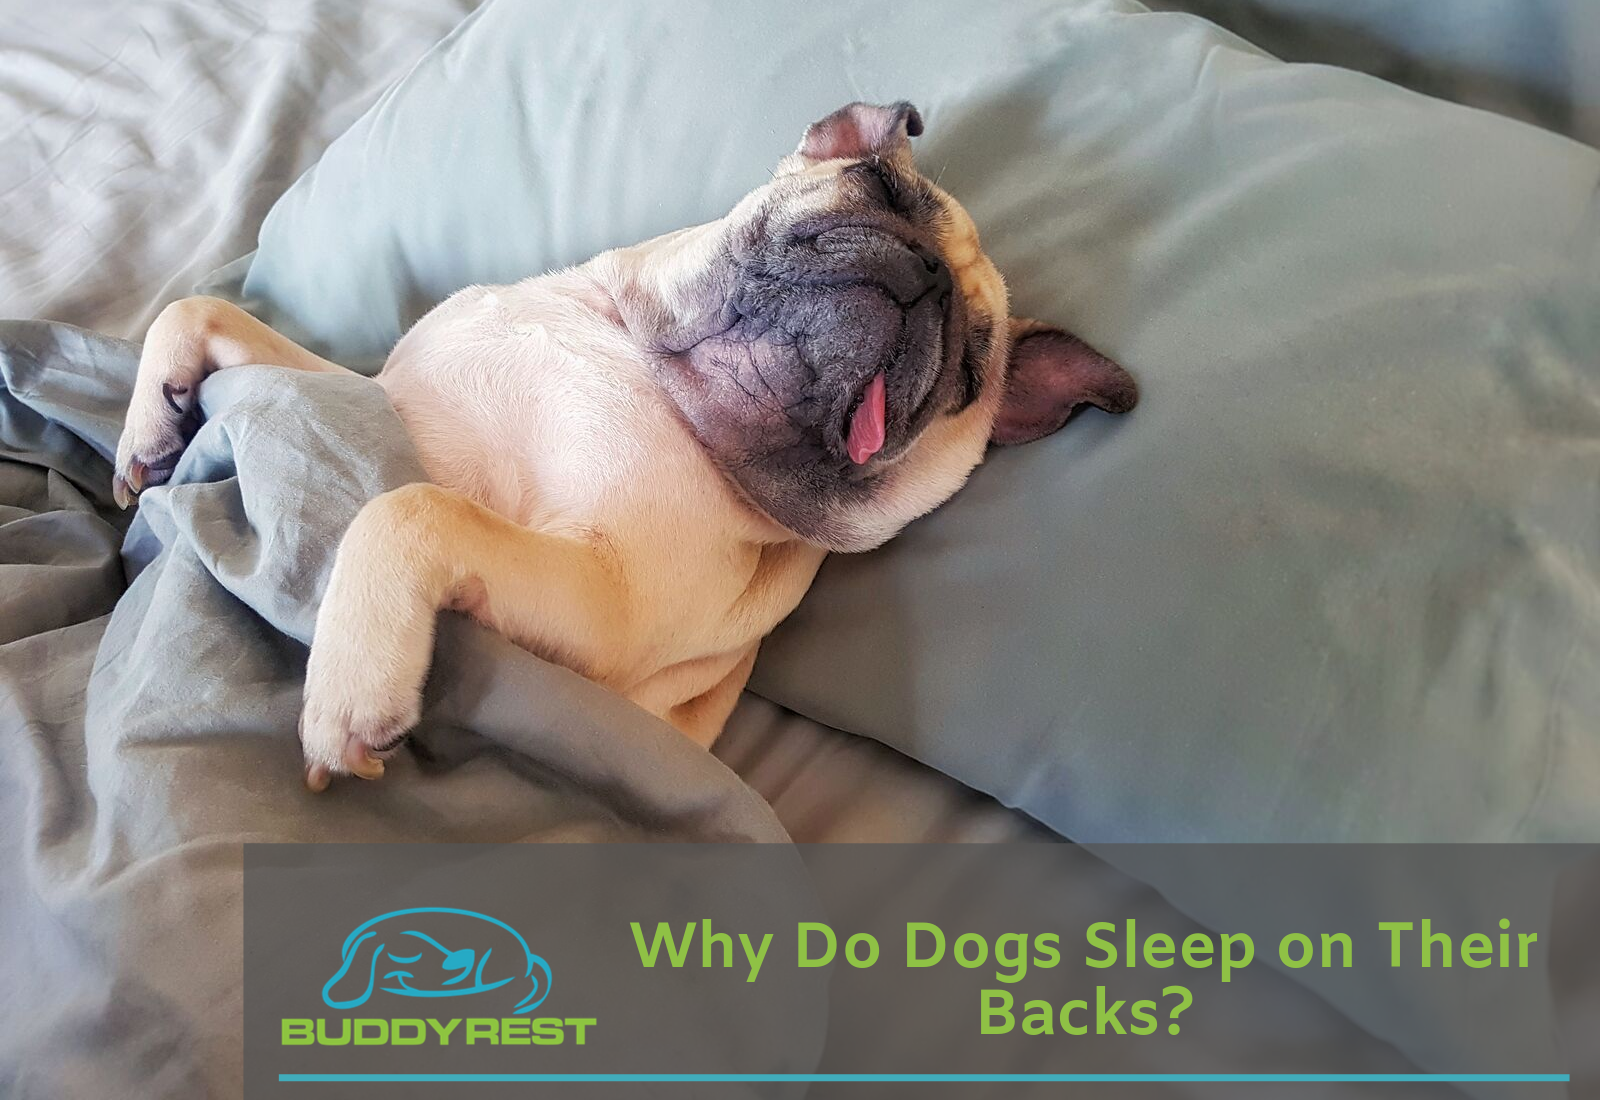 Why Do Dogs Sleep on Their Backs?